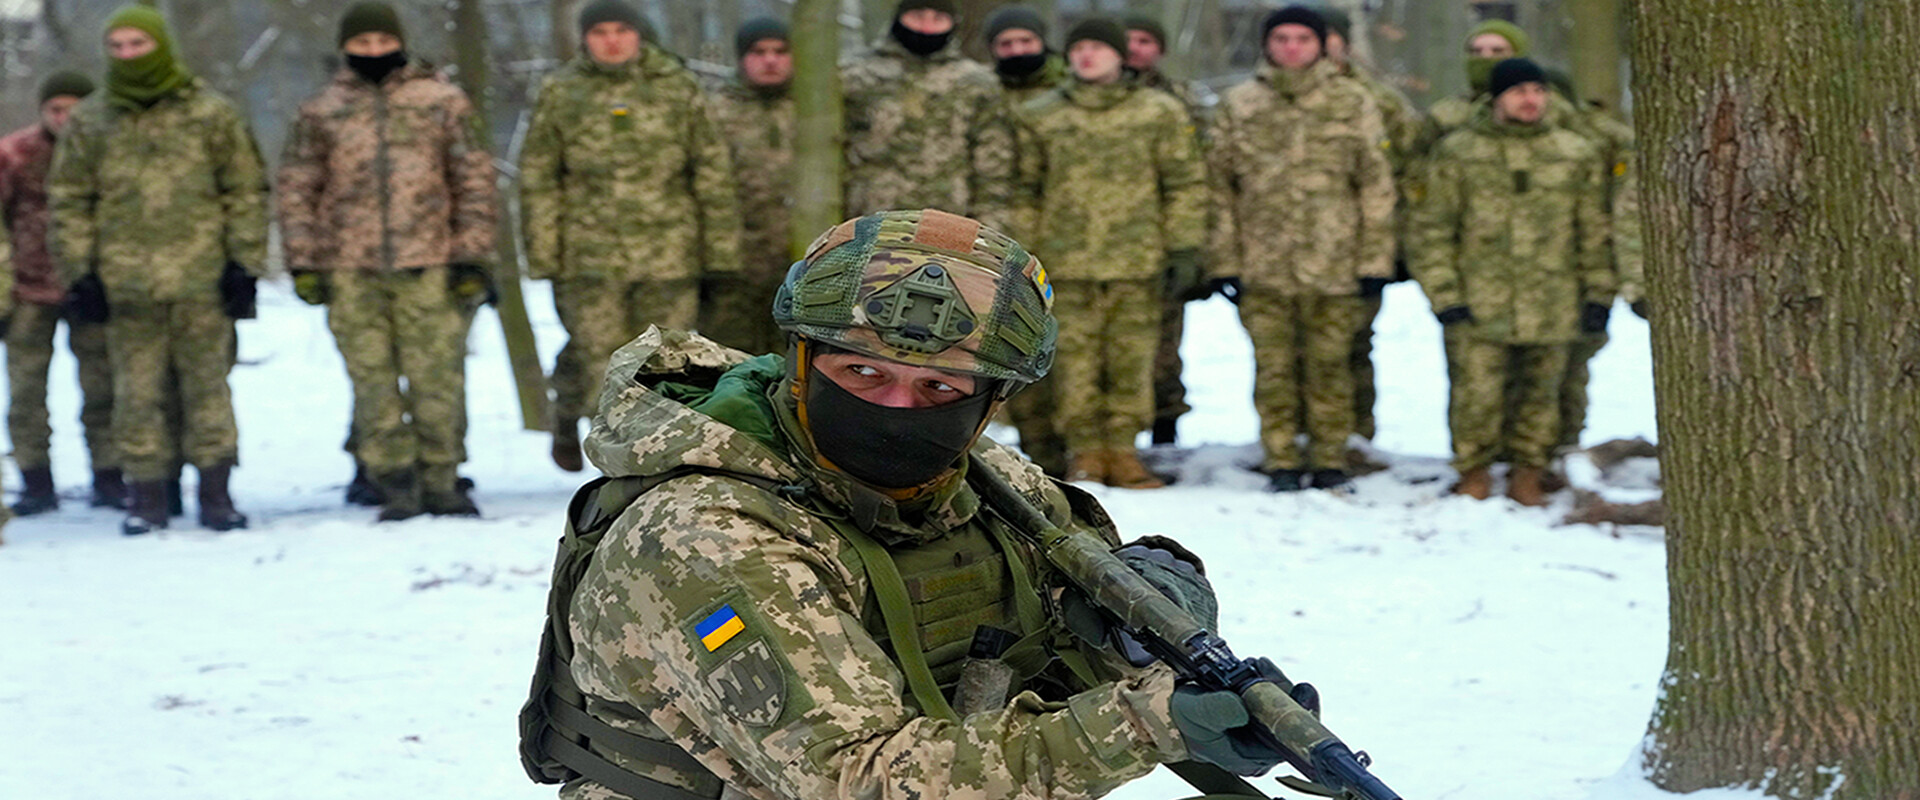 קולות מאוקראינה - כוננות ספיגה (צילום: AP)